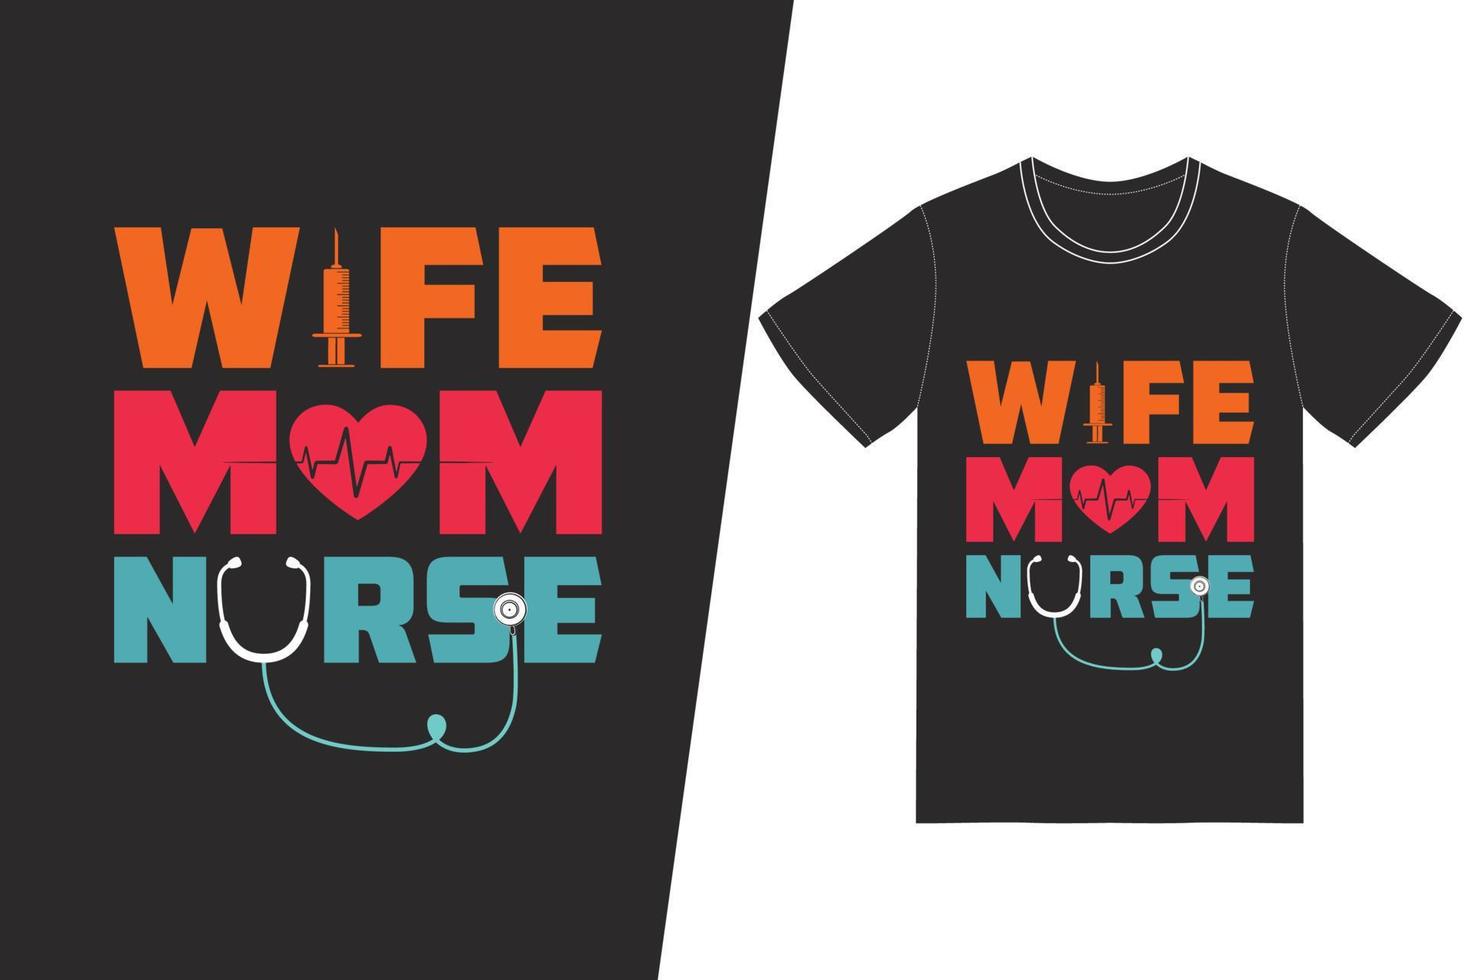 diseño del día de la enfermera de la enfermera de la madre de la esposa. vector de diseño de camiseta de enfermera. para la impresión de camisetas y otros usos.